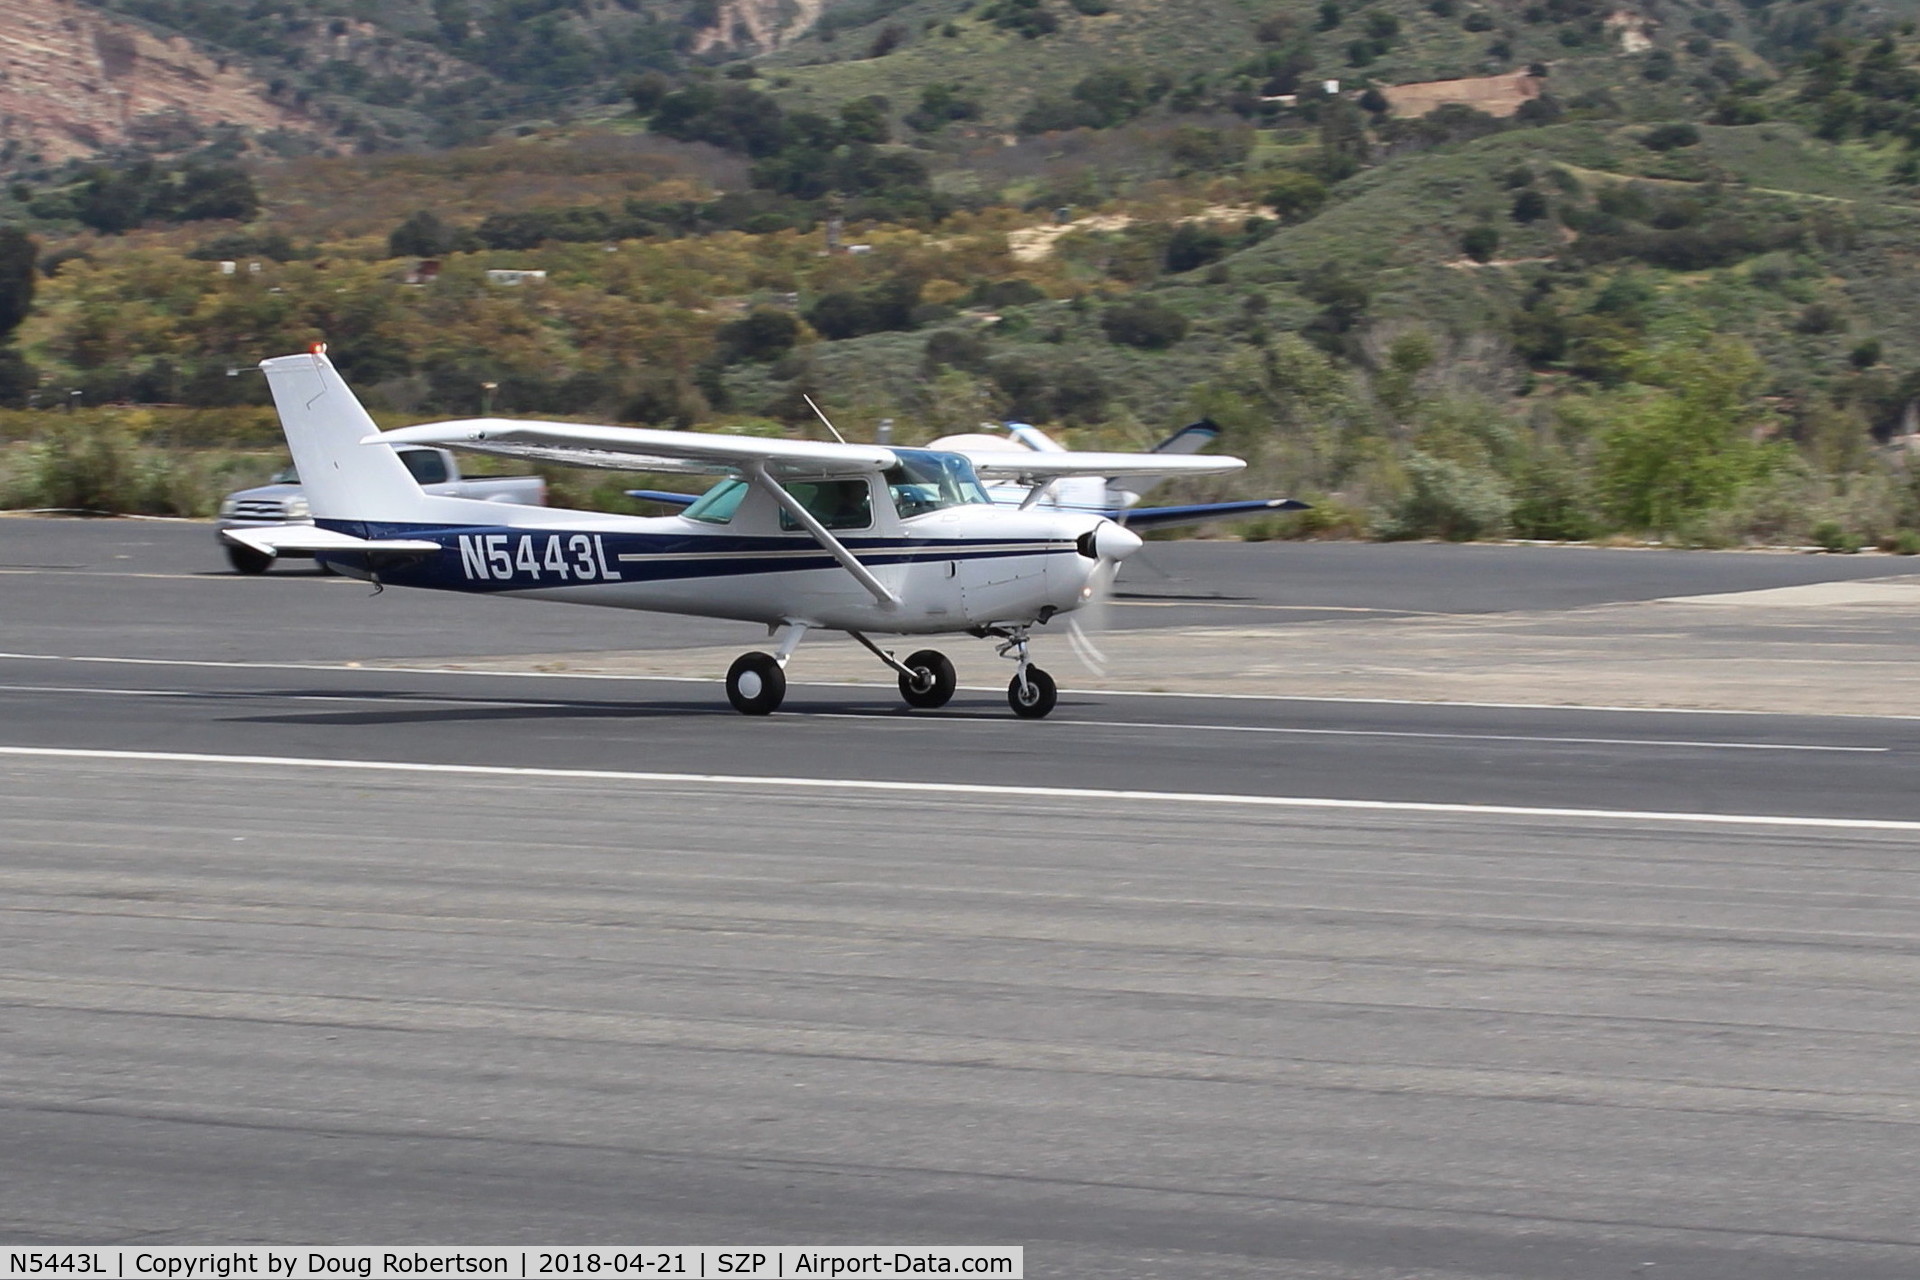 N5443L, 1980 Cessna 152 C/N 15284315, 1980 Cesna 152, Lycoming O-235-L2C 115 hp, landing roll Rwy 22